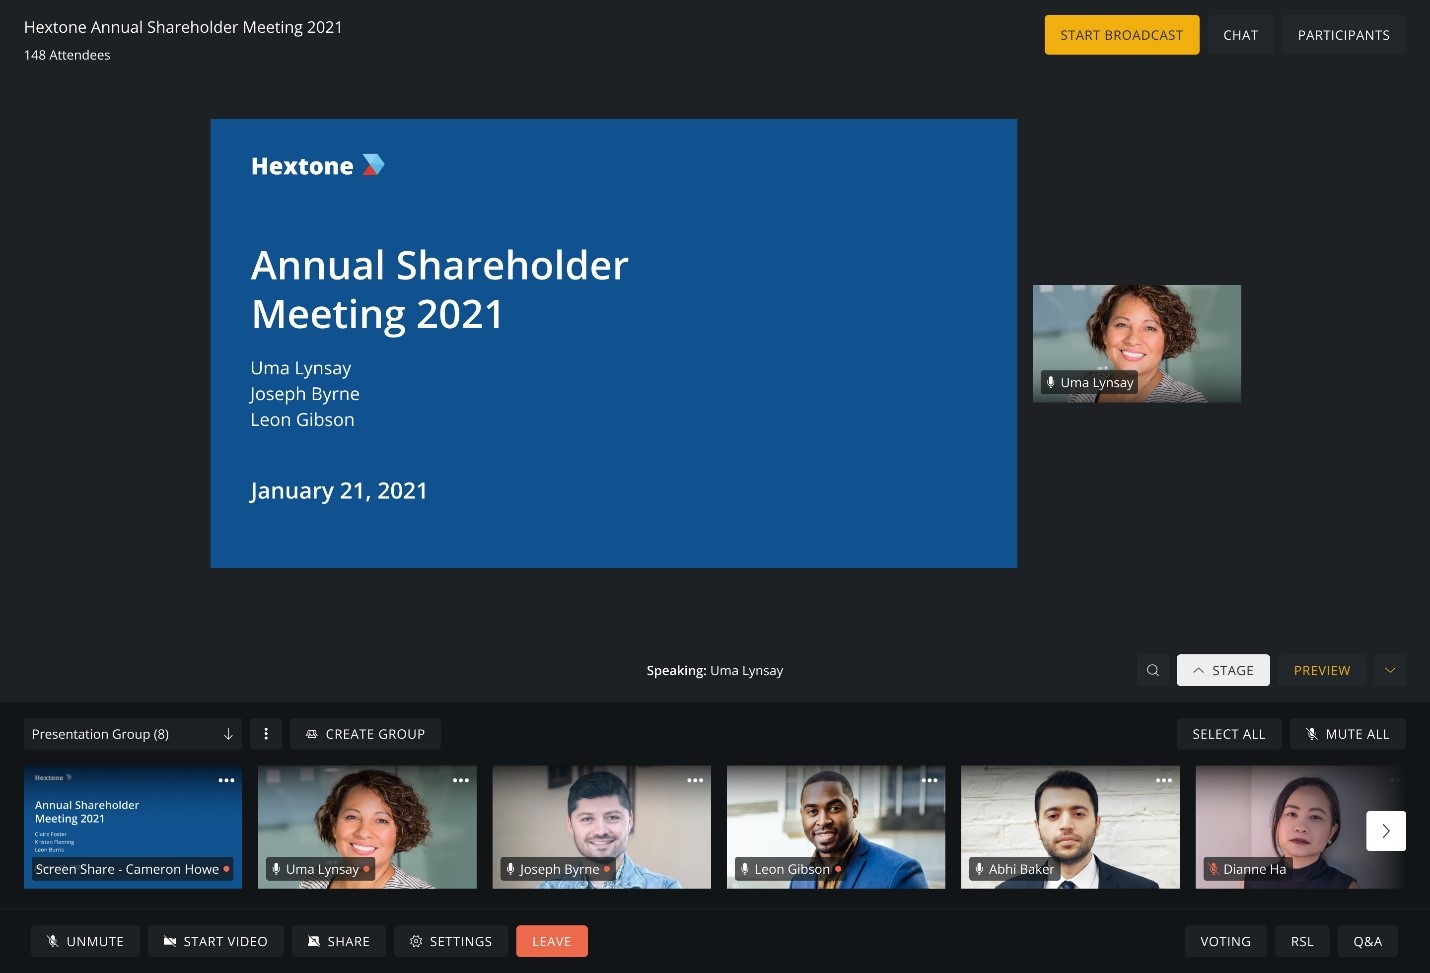 Annual Shareholder Meeting 2021